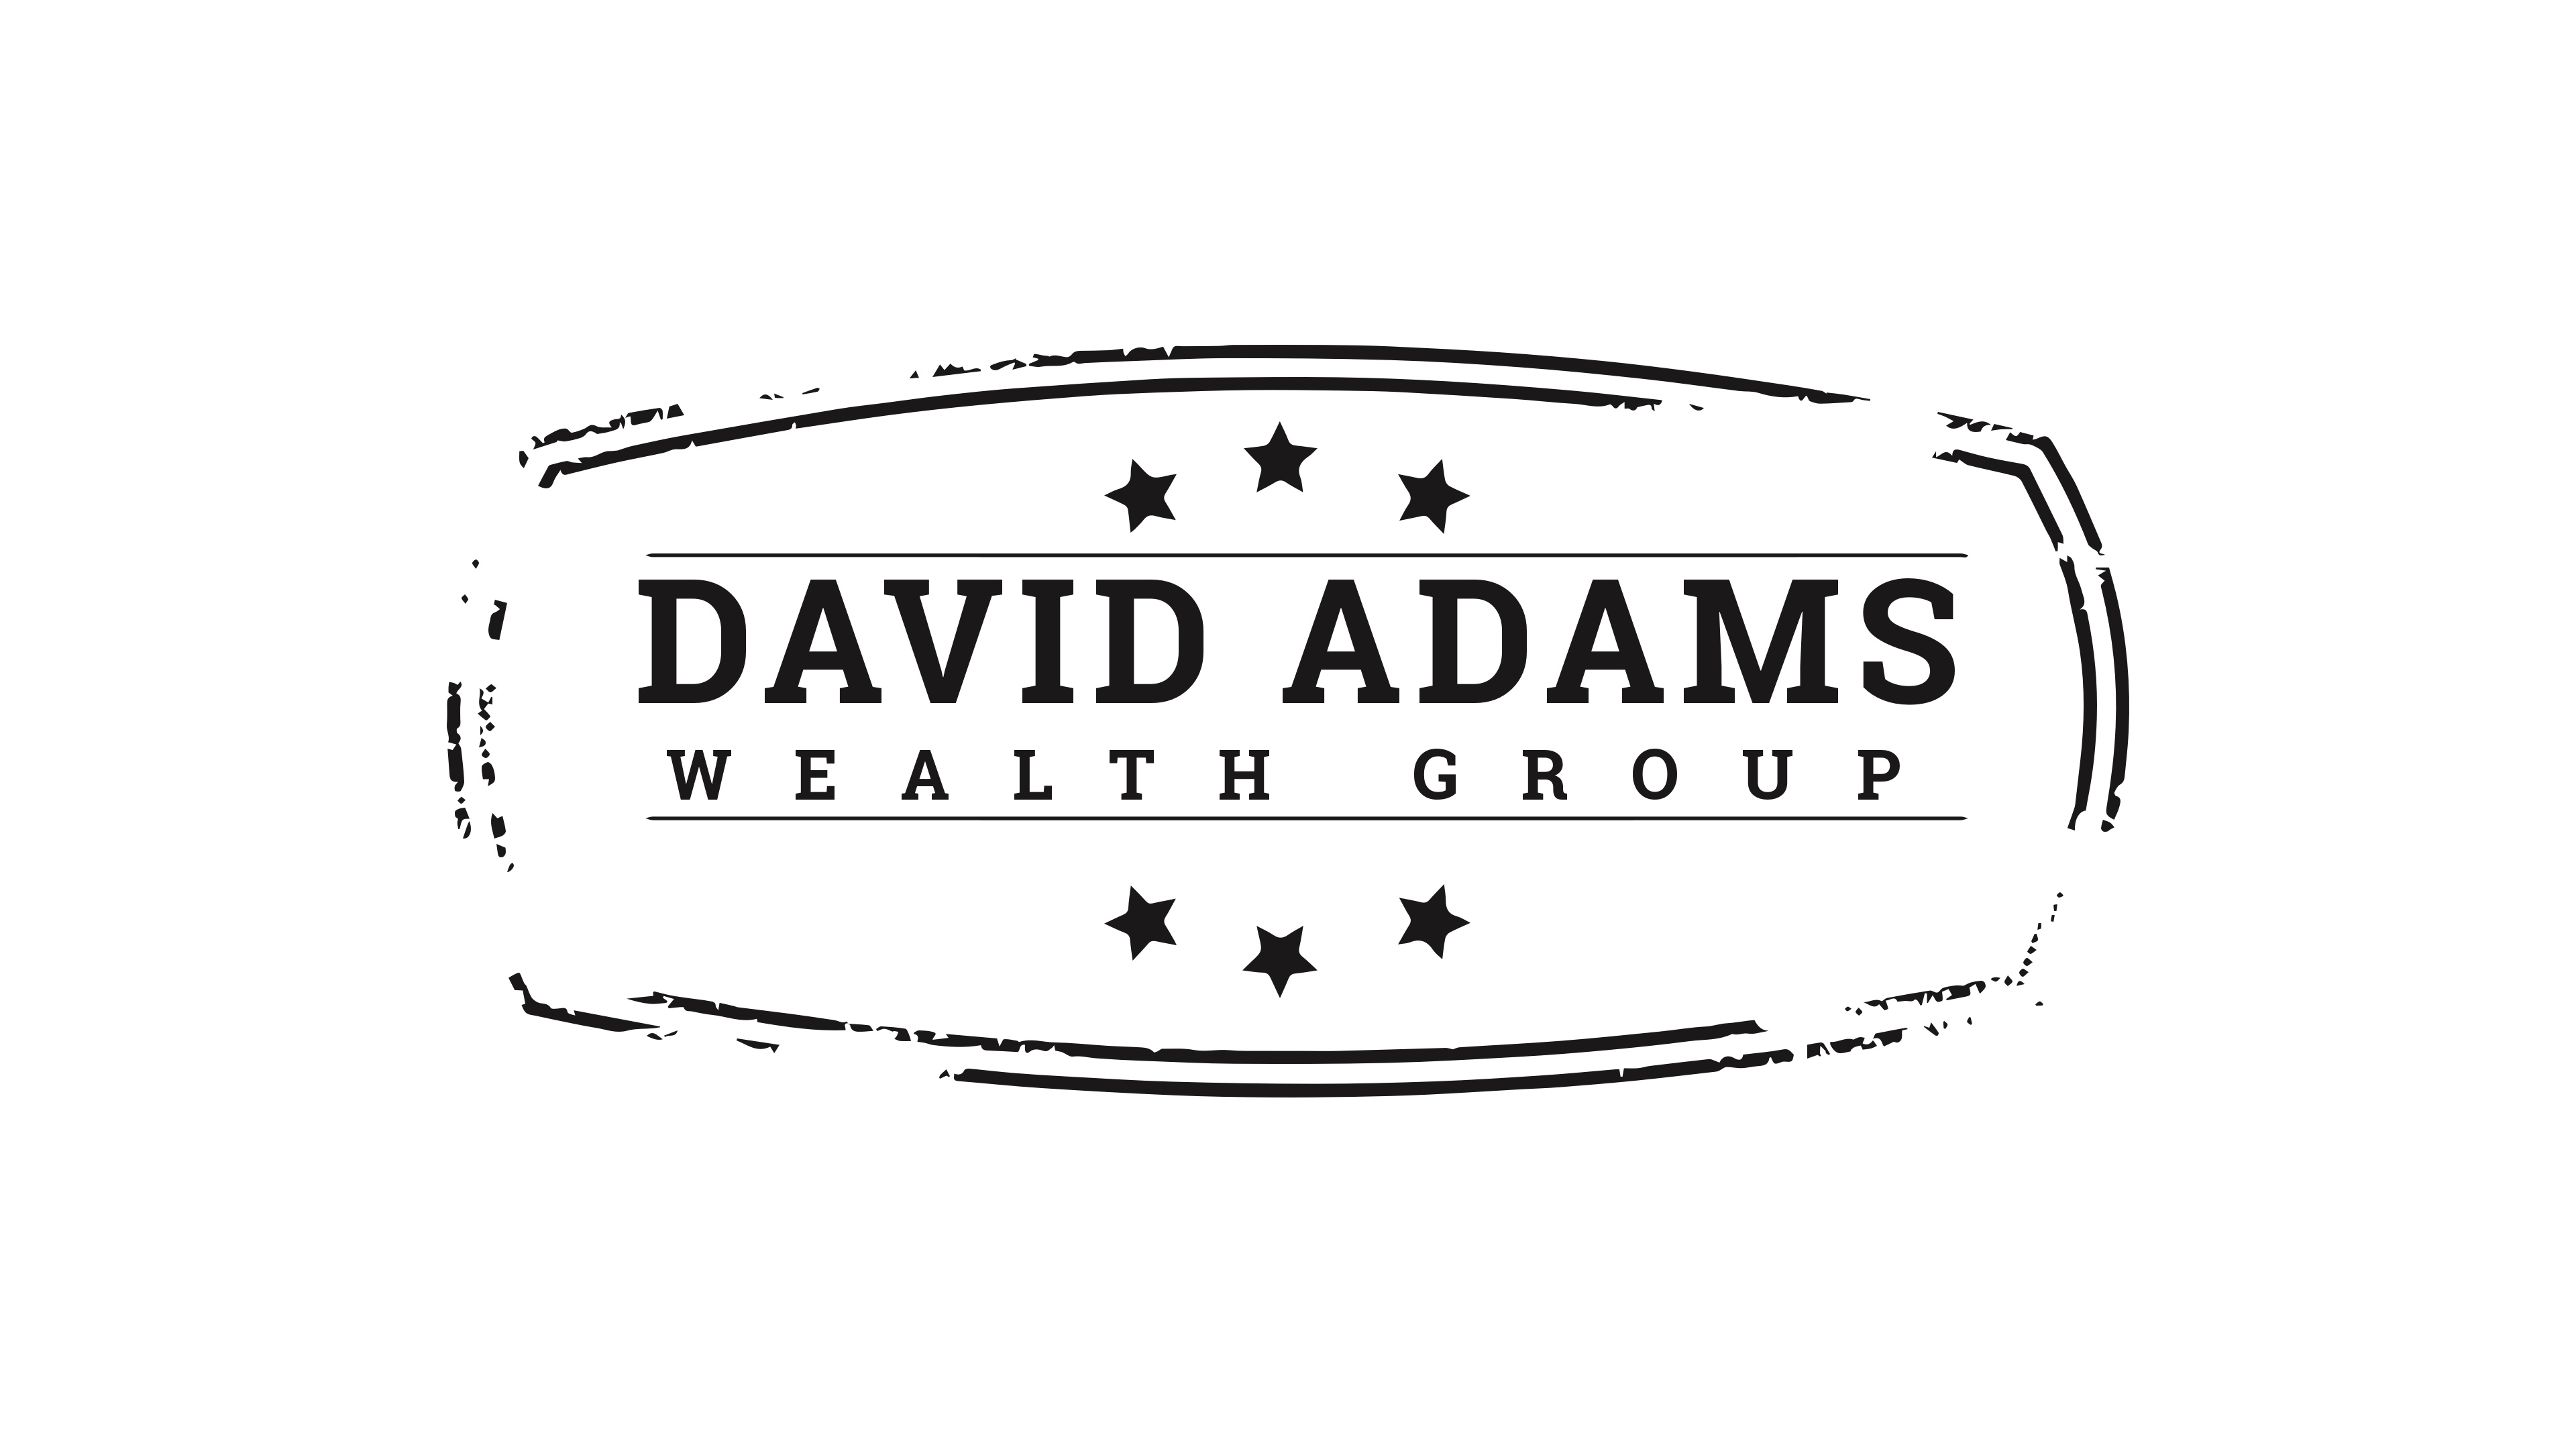 5. Grupo de riqueza de David Adams